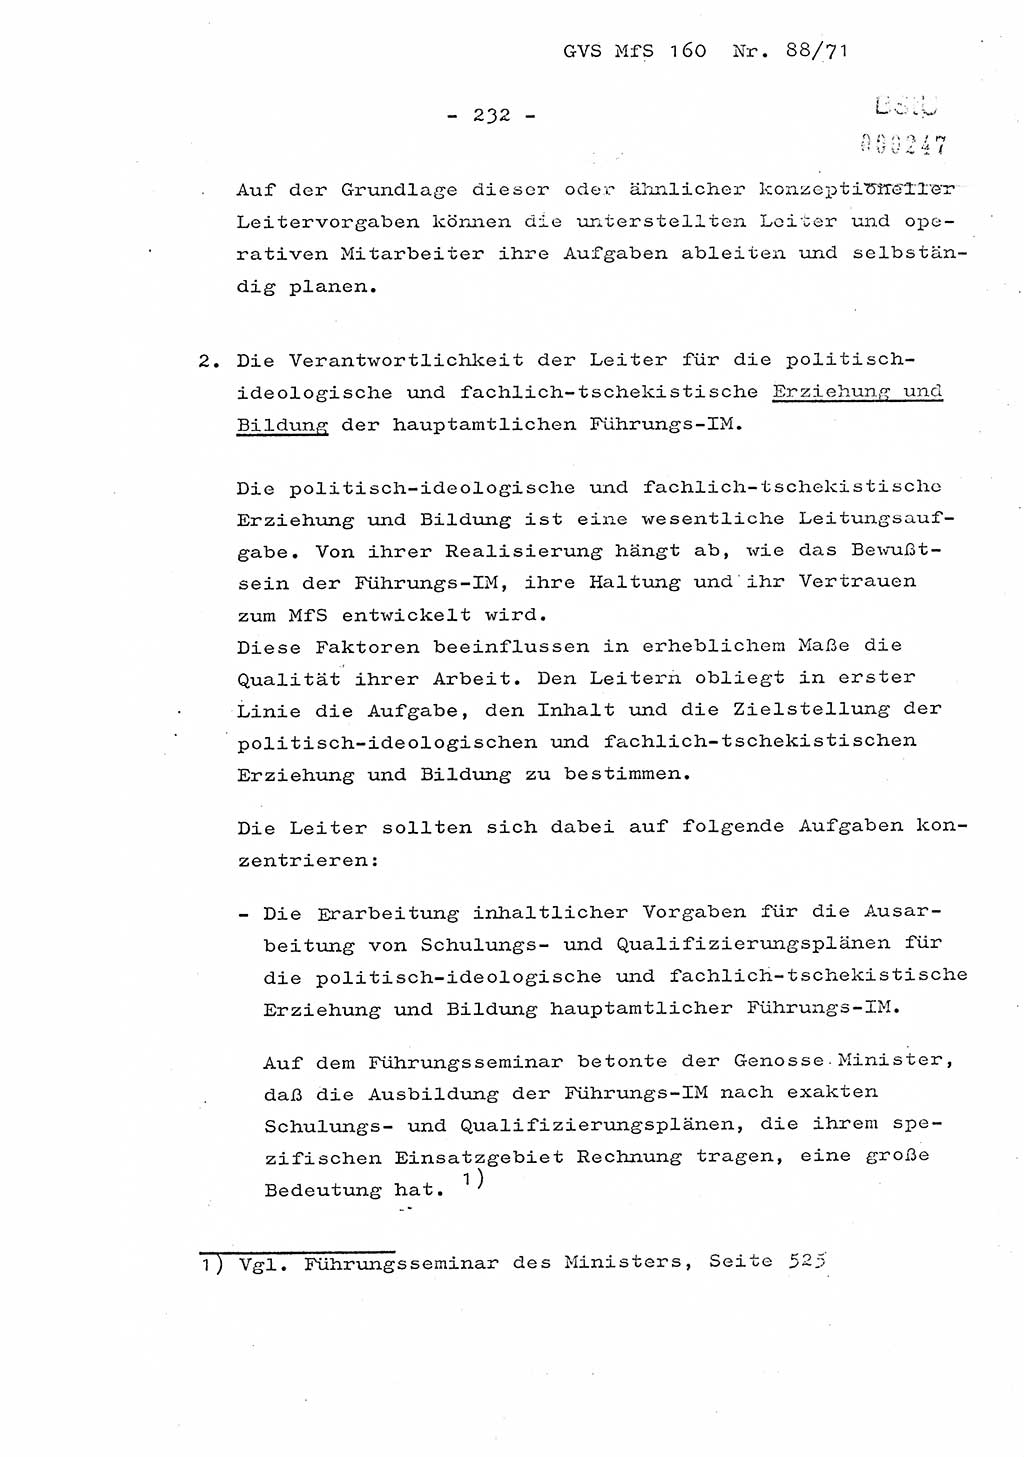 Dissertation Oberstleutnant Josef Schwarz (BV Schwerin), Major Fritz Amm (JHS), Hauptmann Peter Gräßler (JHS), Ministerium für Staatssicherheit (MfS) [Deutsche Demokratische Republik (DDR)], Juristische Hochschule (JHS), Geheime Verschlußsache (GVS) 160-88/71, Potsdam 1972, Seite 232 (Diss. MfS DDR JHS GVS 160-88/71 1972, S. 232)